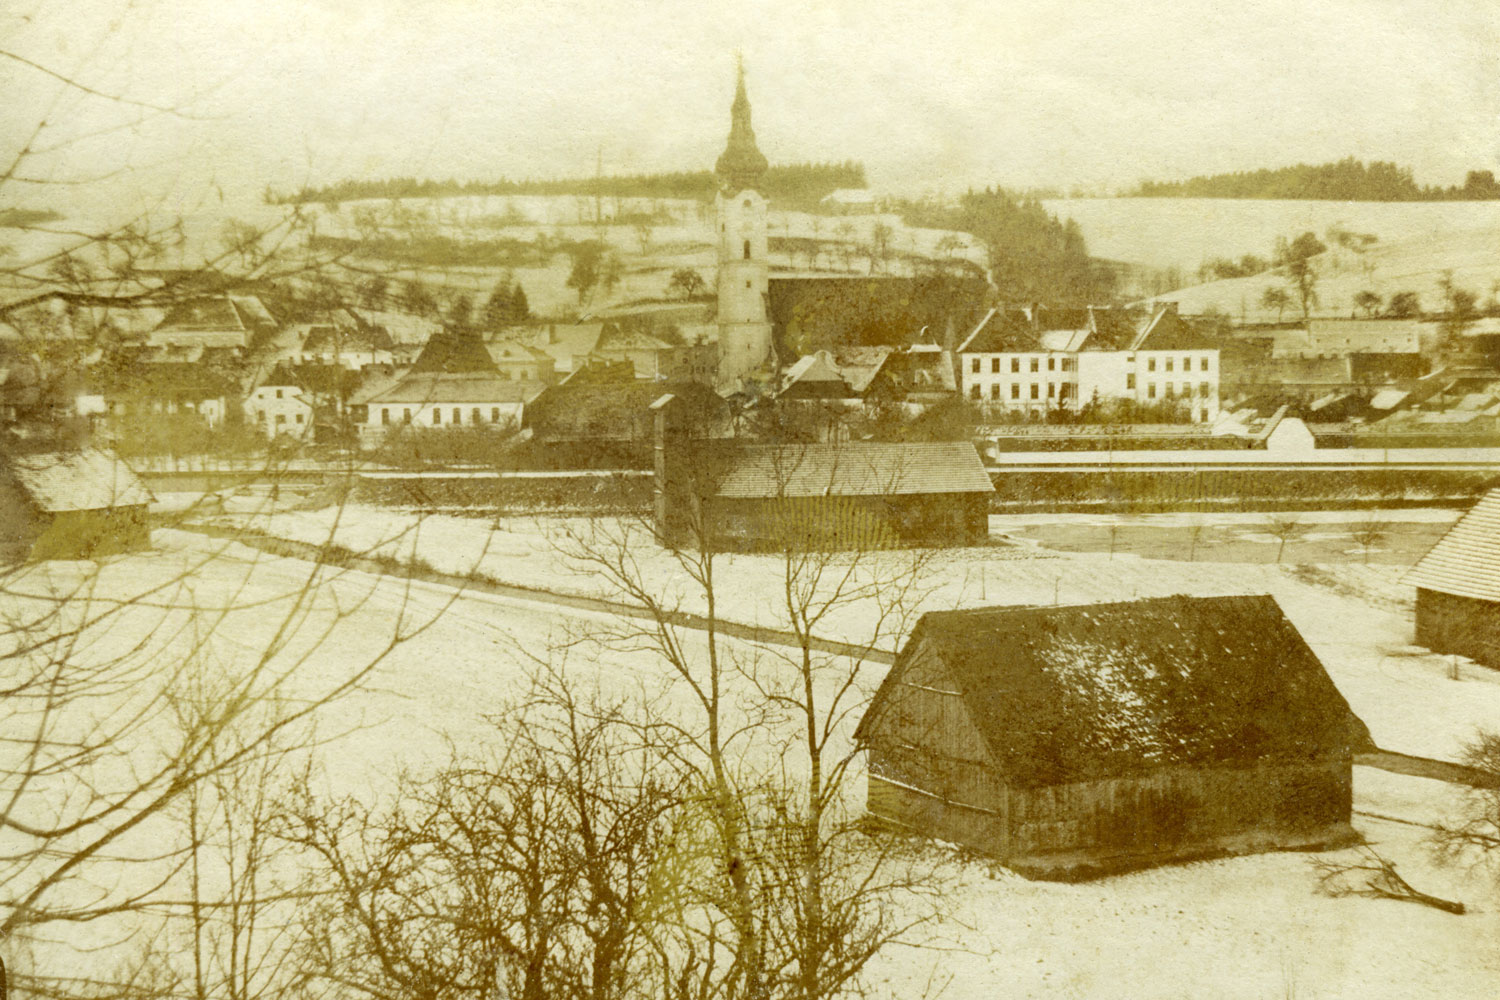 Pola i łąki przed miastem, pomiędzy rzeka Tratt, która często powodowała powodzie. Grieskirchen w 19. stuleciu